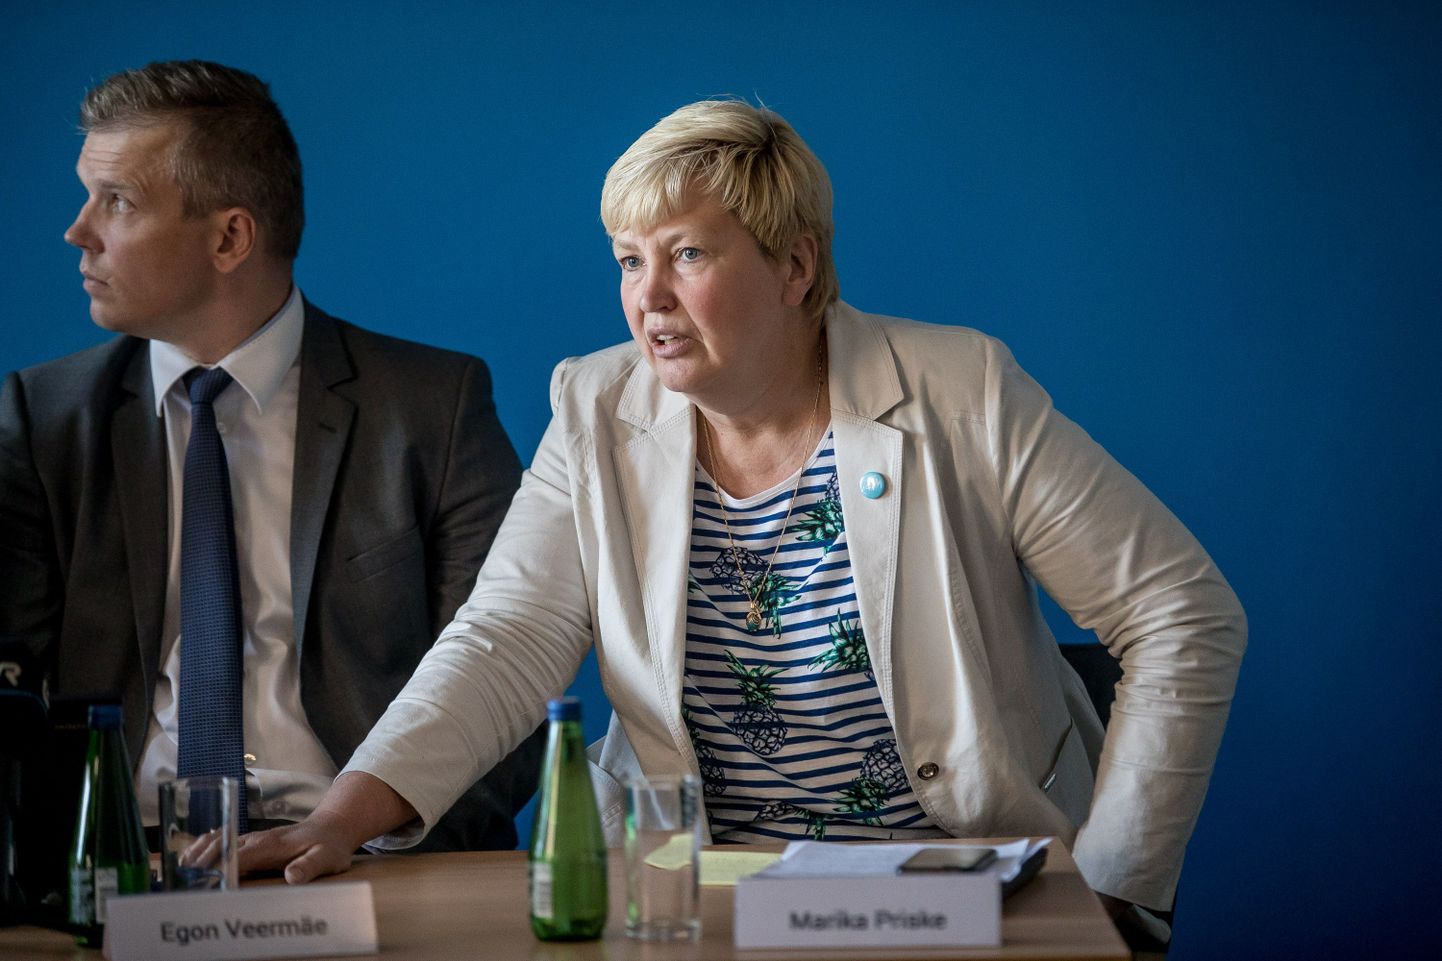 Marika Priske ja Egon Veermäe (SKA juht)